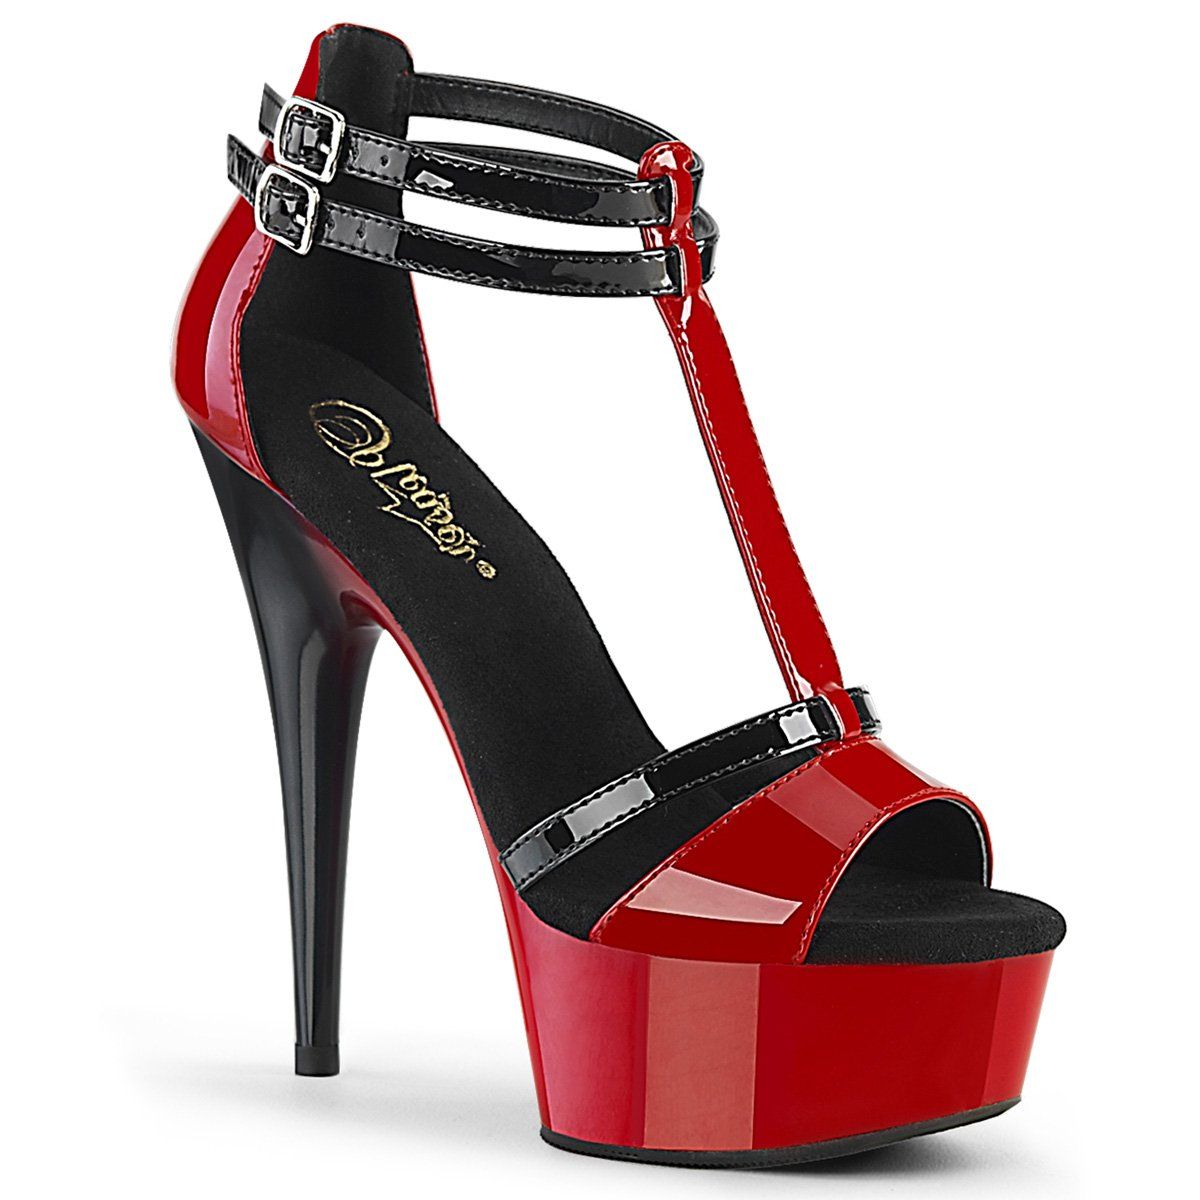 DELIGHT-663 Red-Black Patent/Red-Black Platform Sandal Pleaser